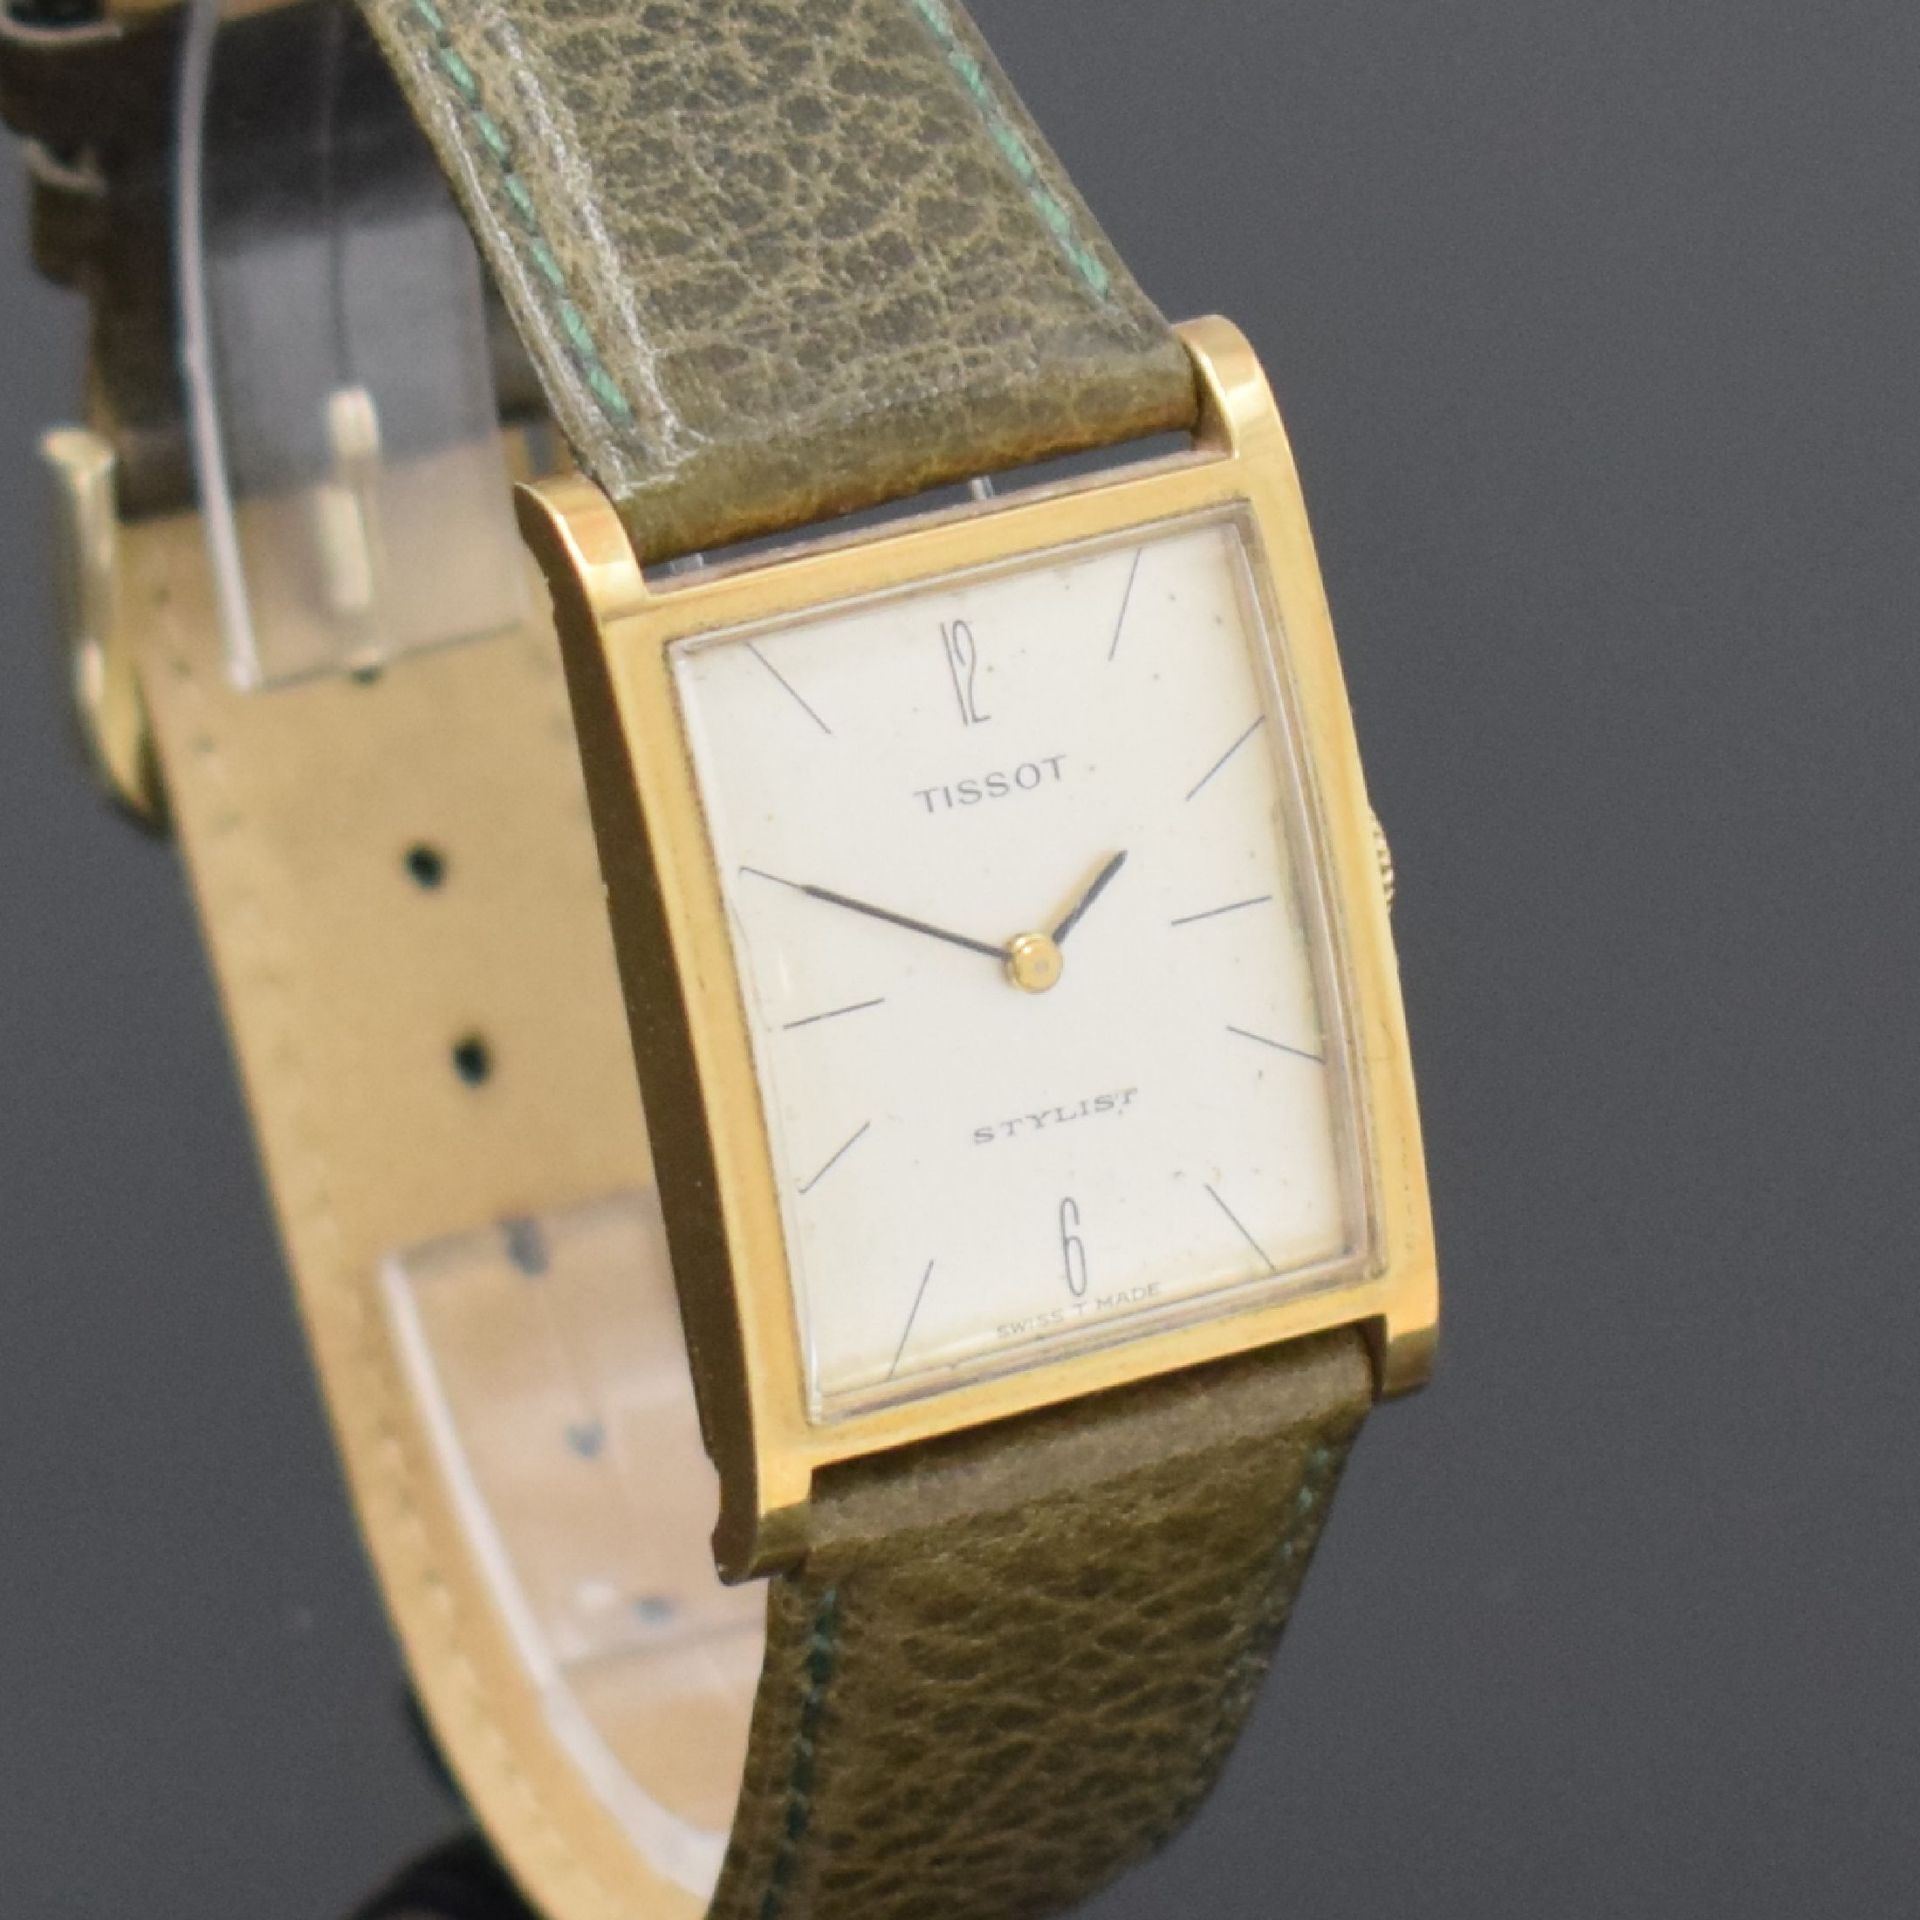 TISSOT Stylist Armbanduhr in GG 585/000, Schweiz um 1965, - Image 4 of 5